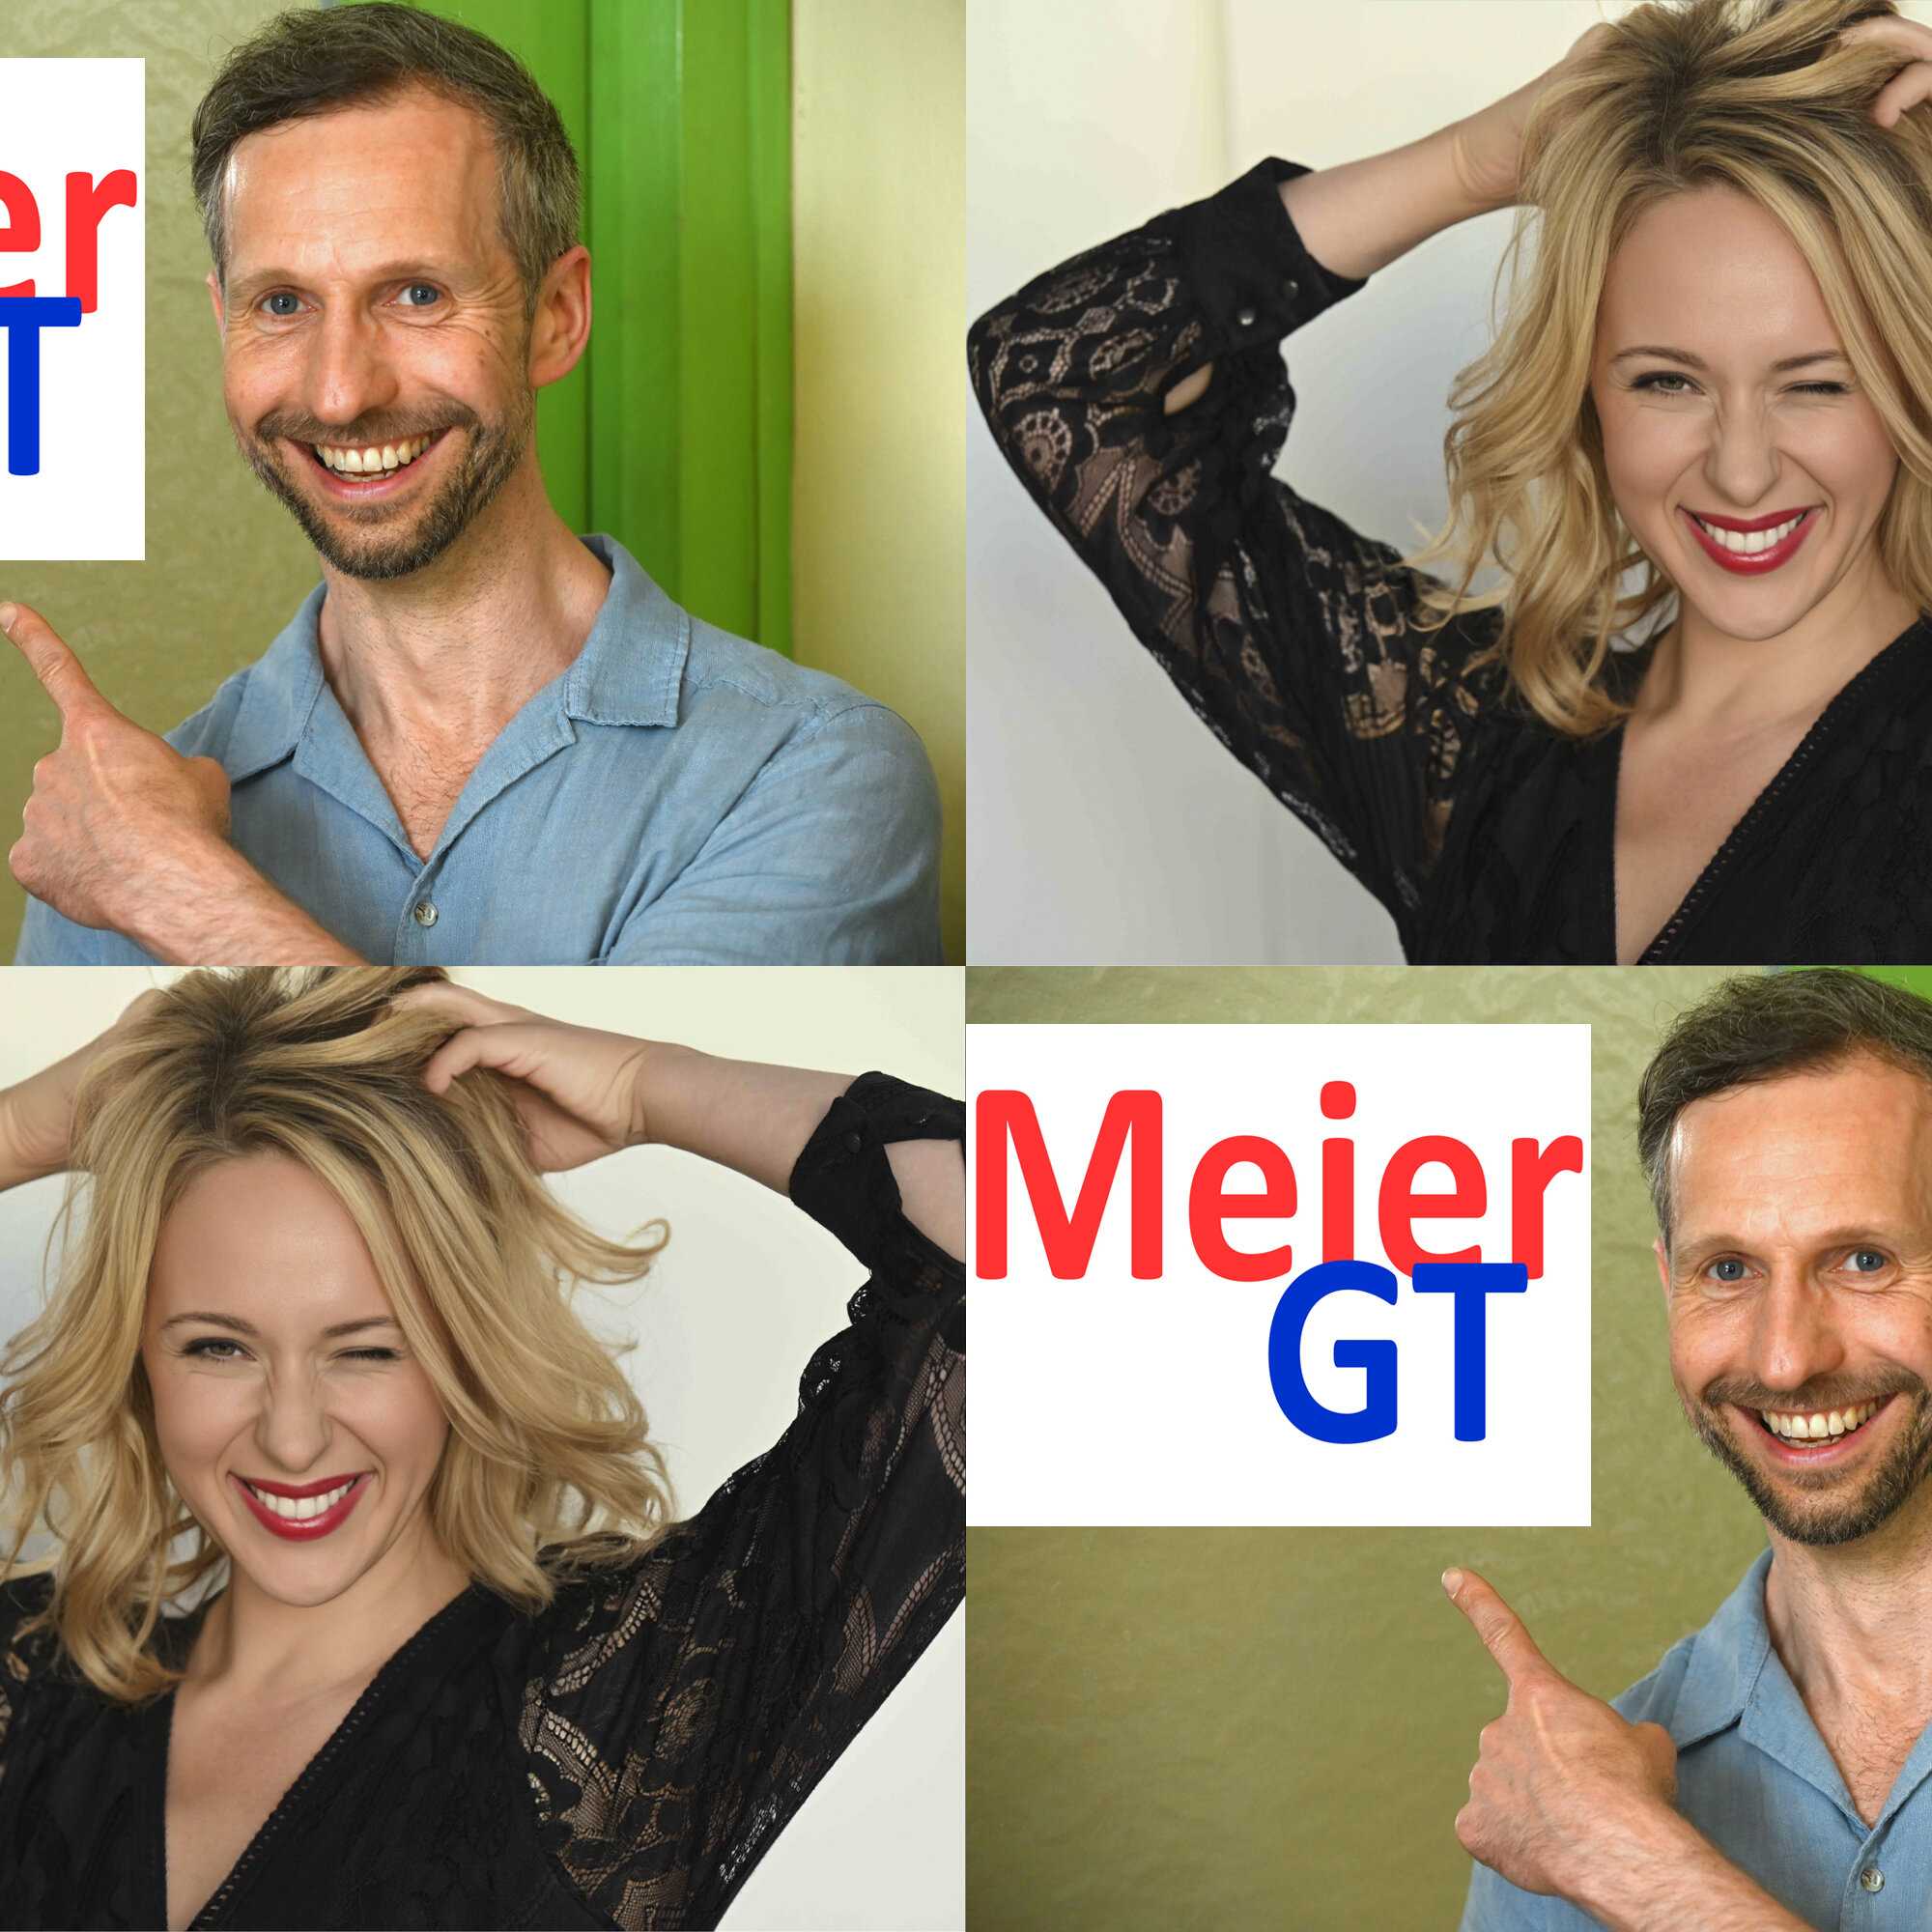 Meier GT - Warum woanders lachen?